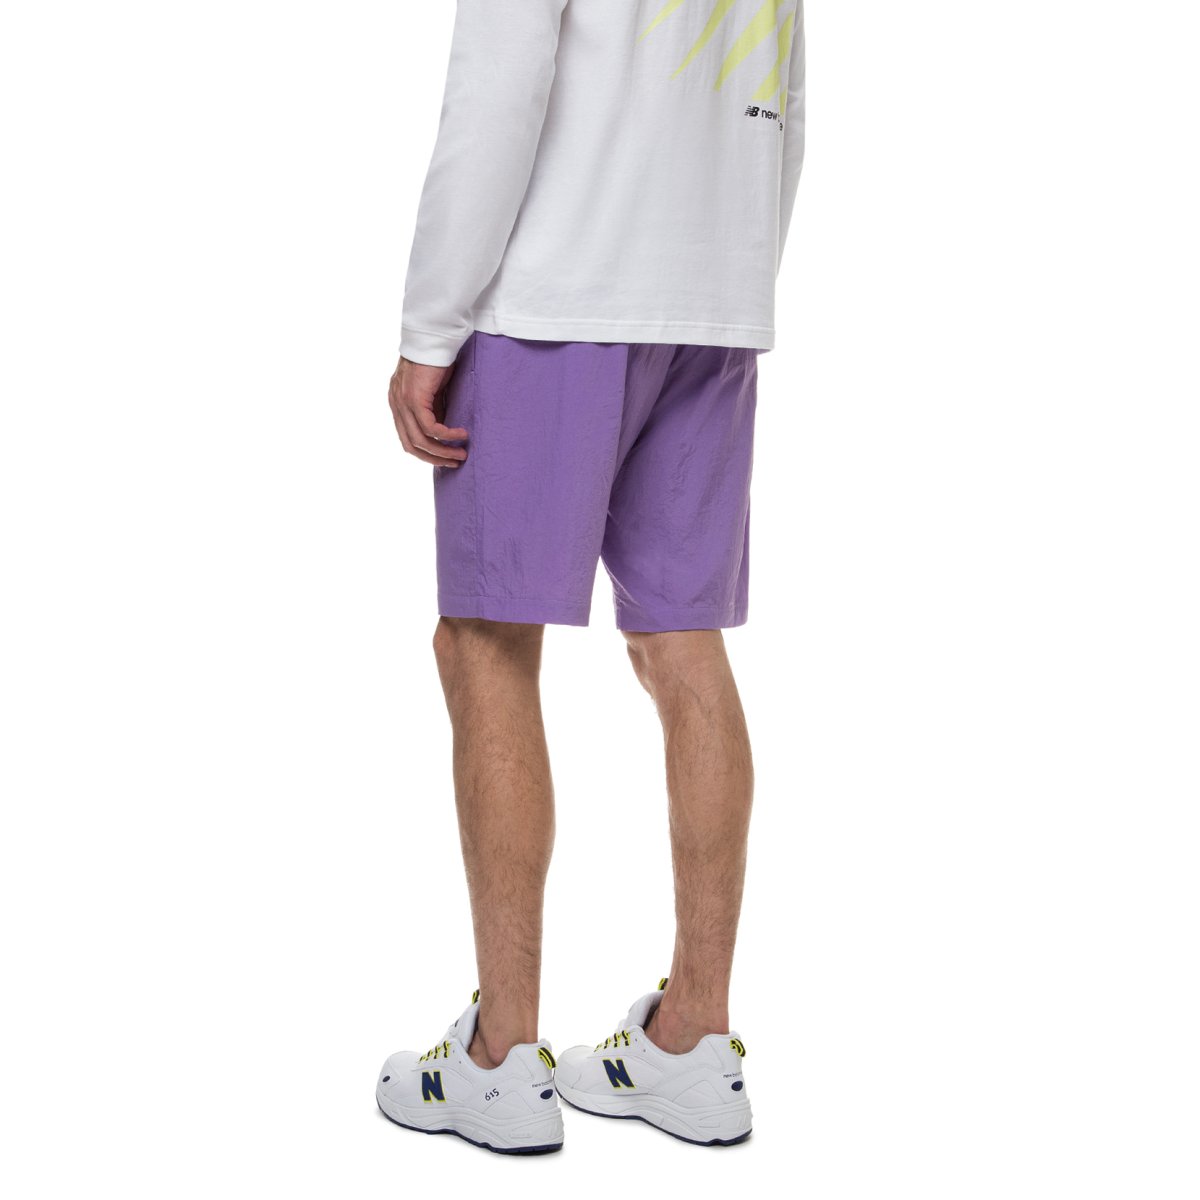 New Balance шорты фиолетовые